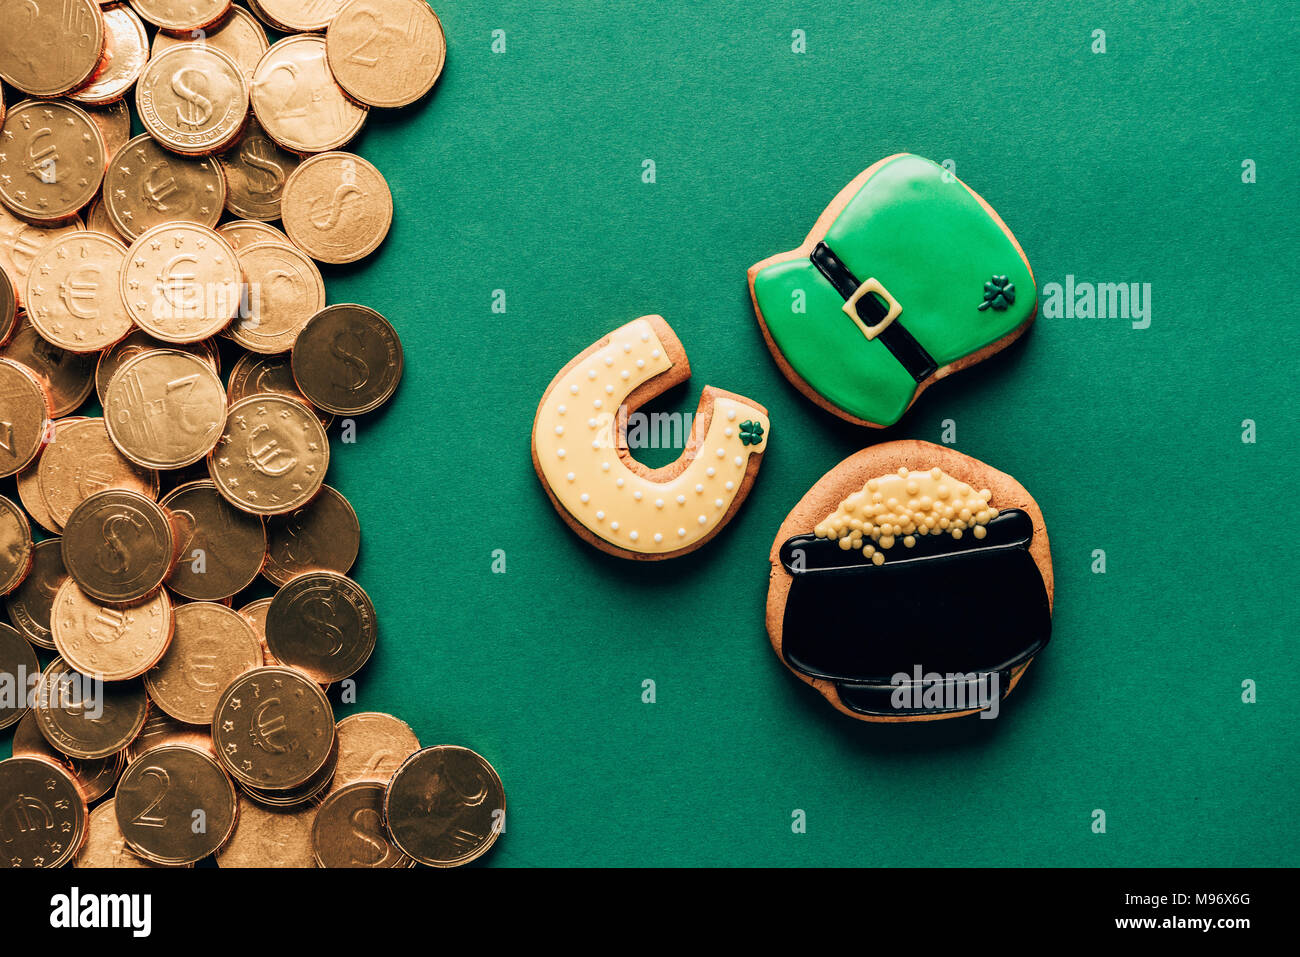 Blick von oben auf die Vereisung cookies und goldenen Münzen auf Grün, st patricks day Konzept Stockfoto